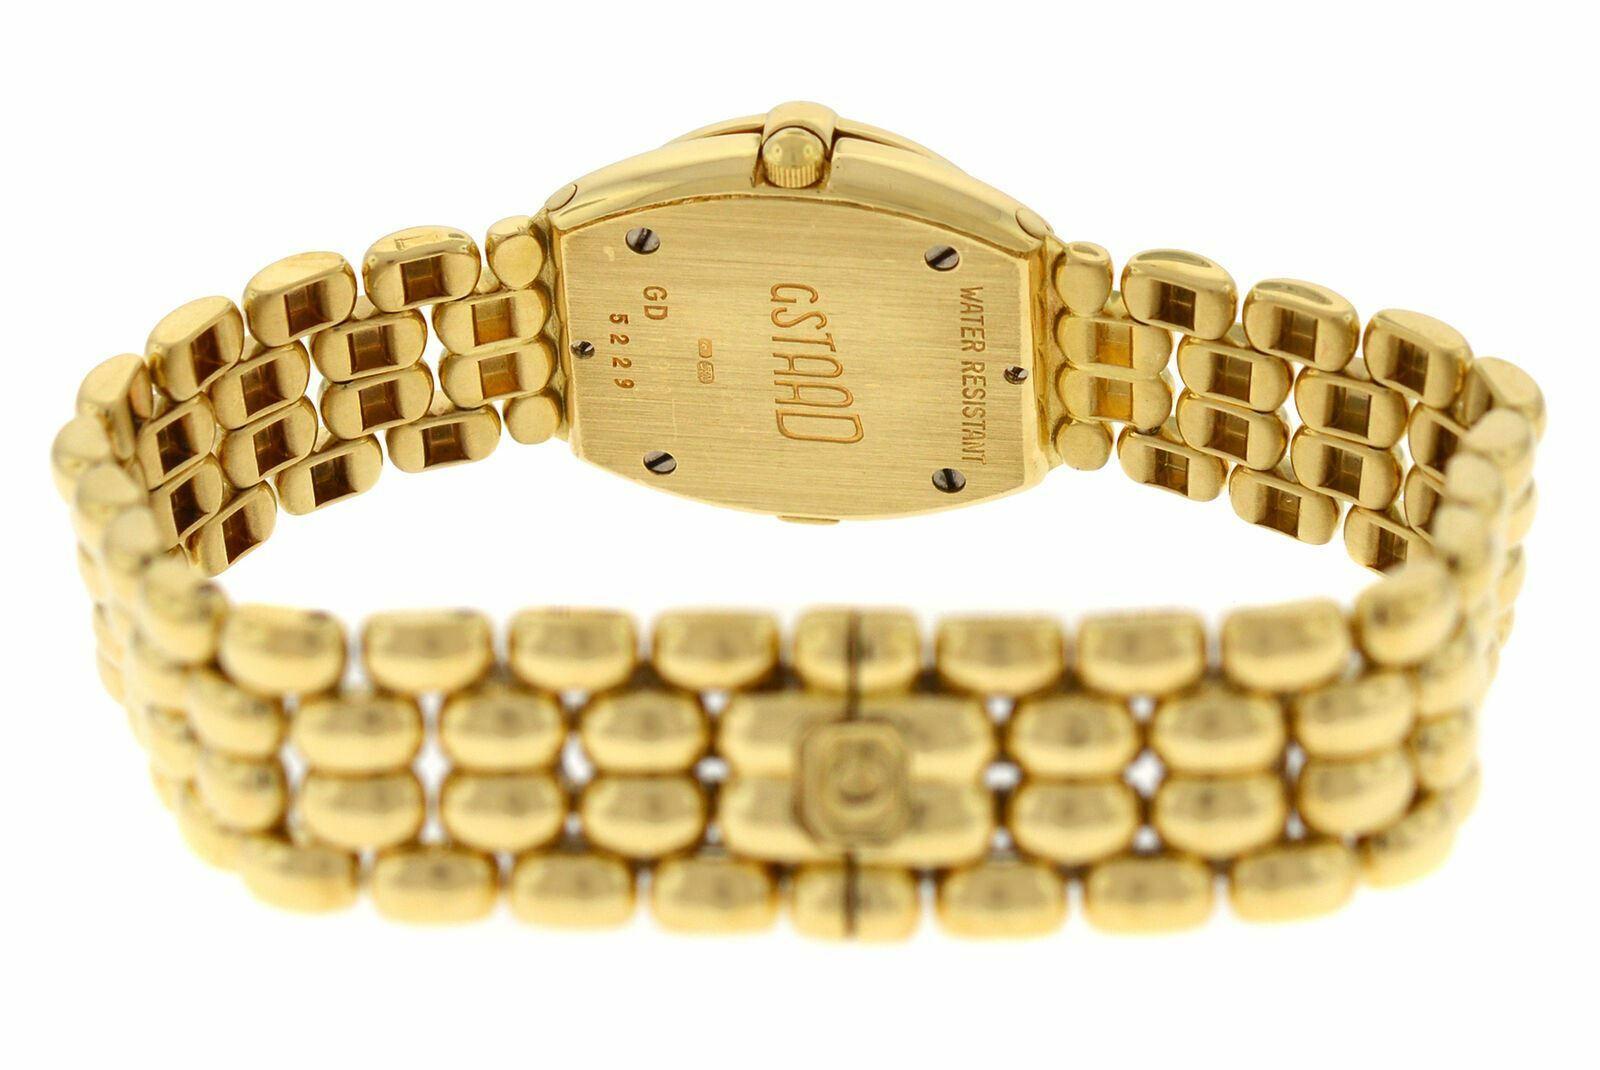 Ladies Chopard Gstaad Quartz 18 Karat Yellow Gold Watch For Sale 1